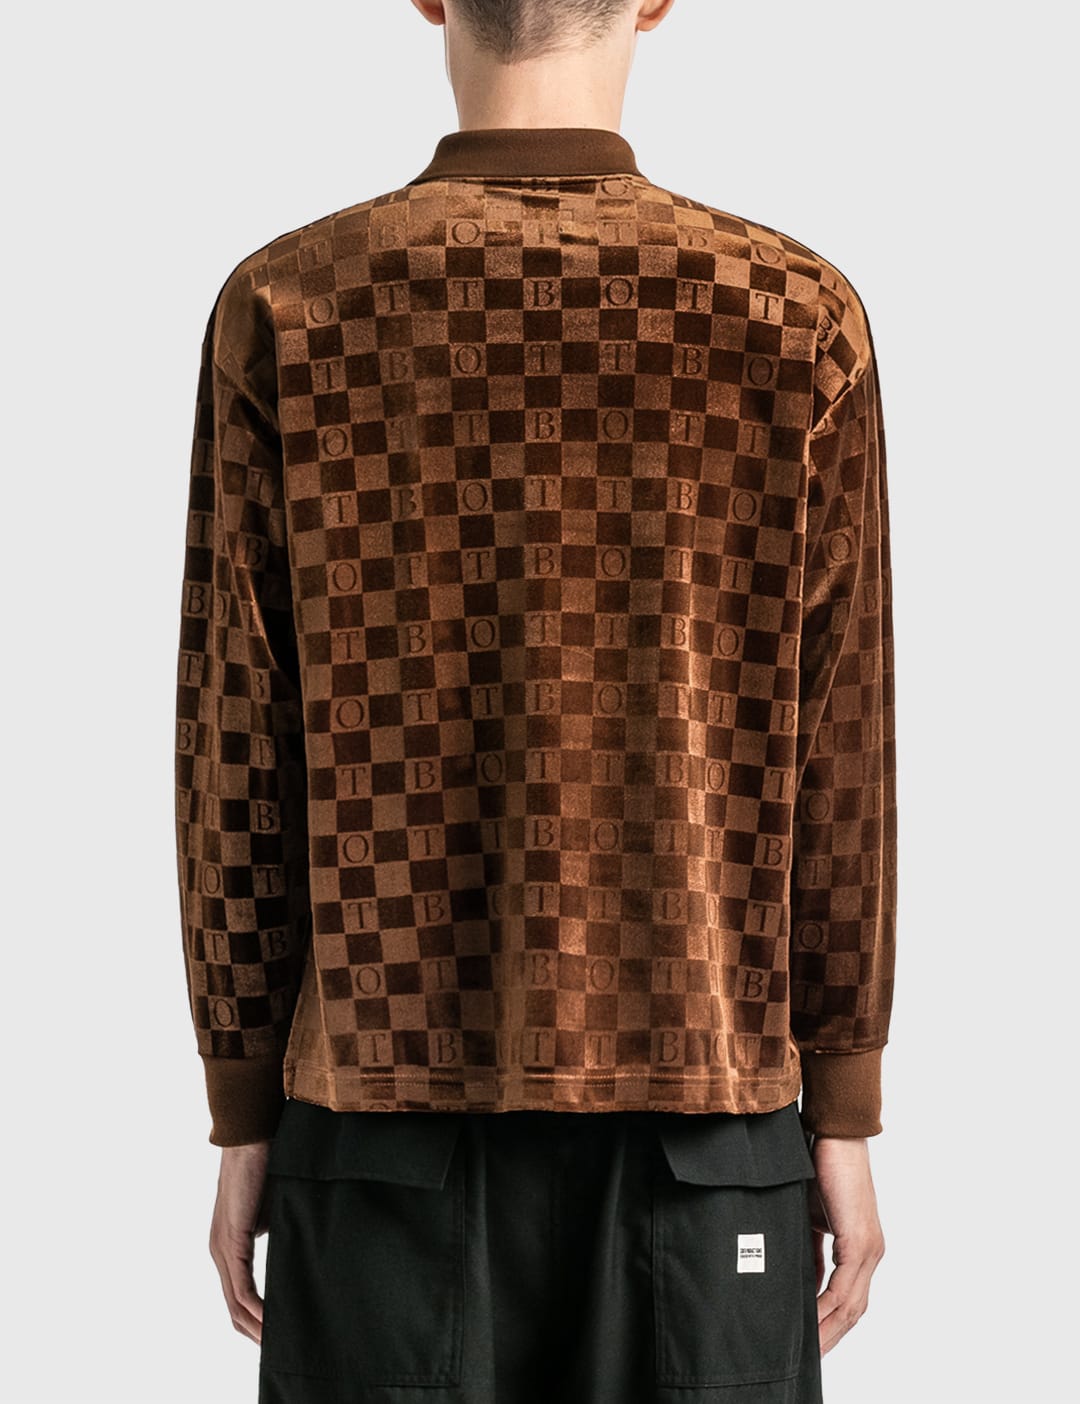 BoTT Checkerboard Velour Polo - ポロシャツ